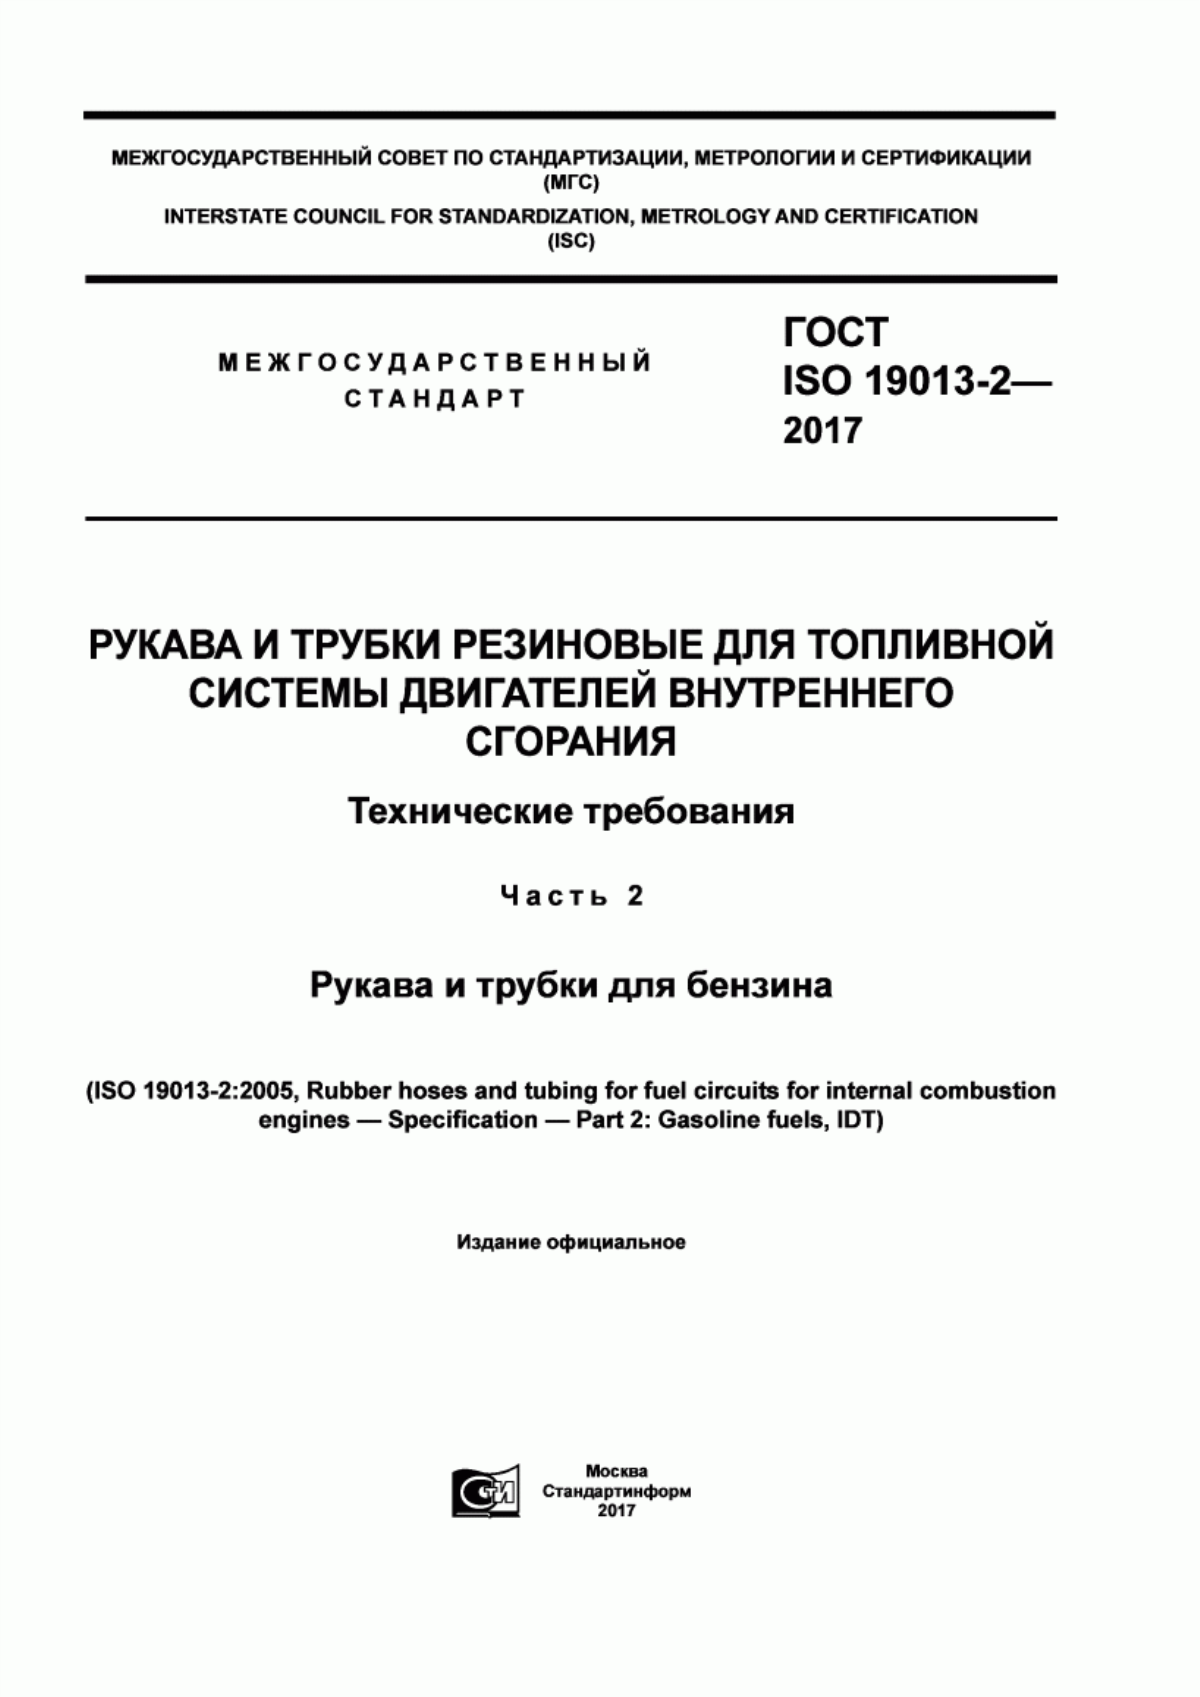 ГОСТ ISO 19013-2-2017 Рукава и трубки резиновые для топливной системы двигателей внутреннего сгорания. Технические требования. Часть 2. Рукава и трубки для бензина